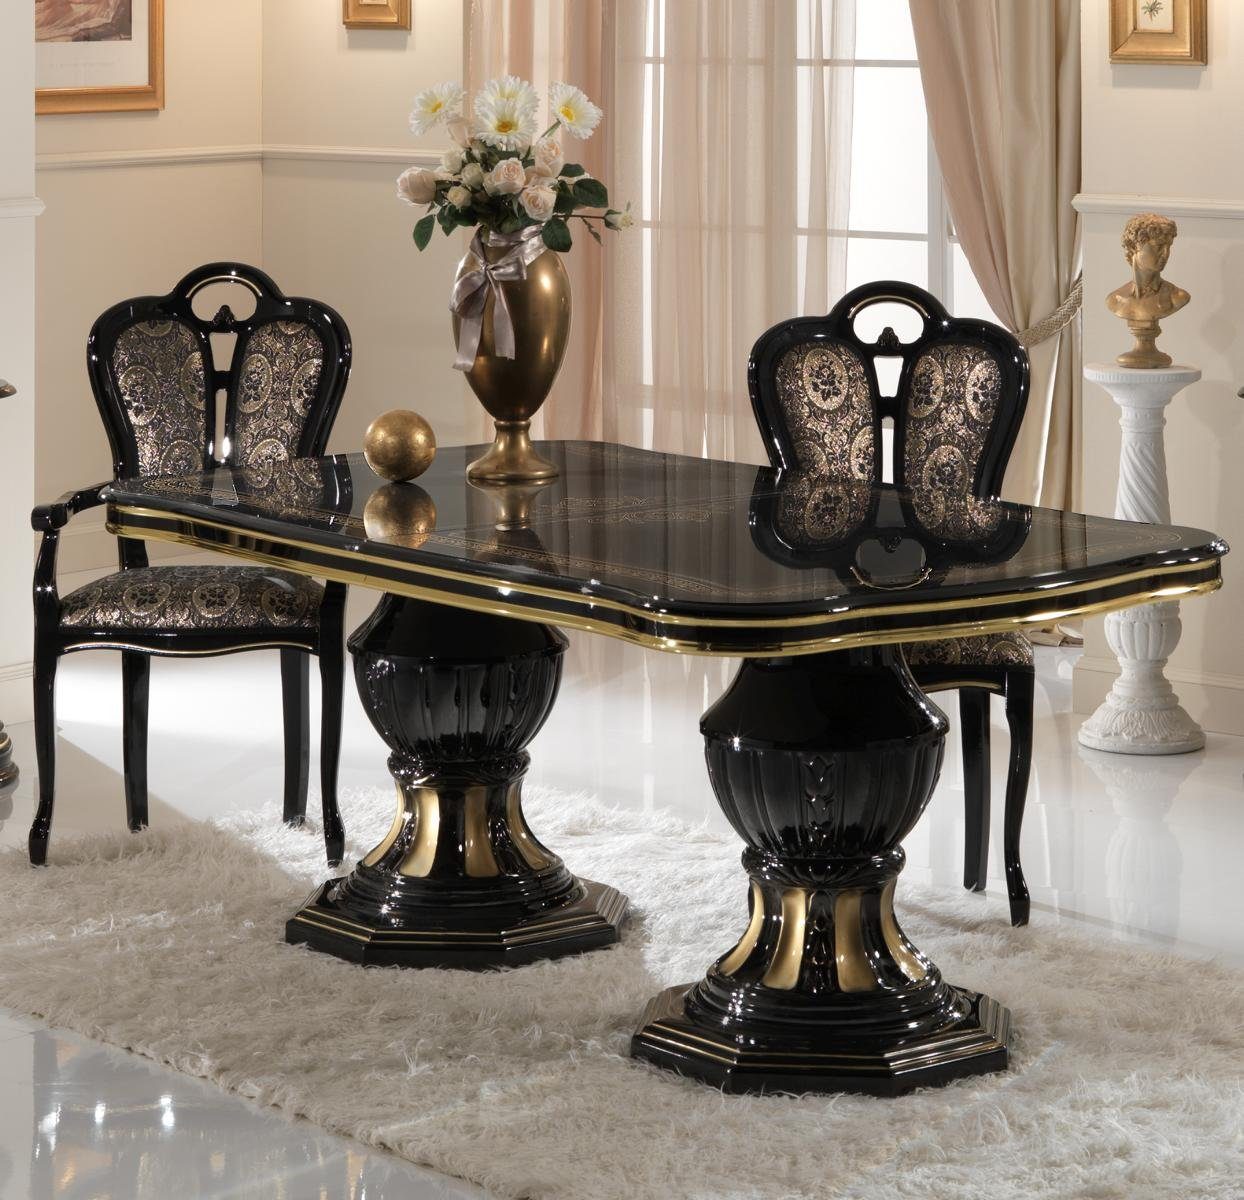 JVmoebel Esstisch Klassische Möbel Zimmer Italienische Möbel Ess Tisch Sessel Designer